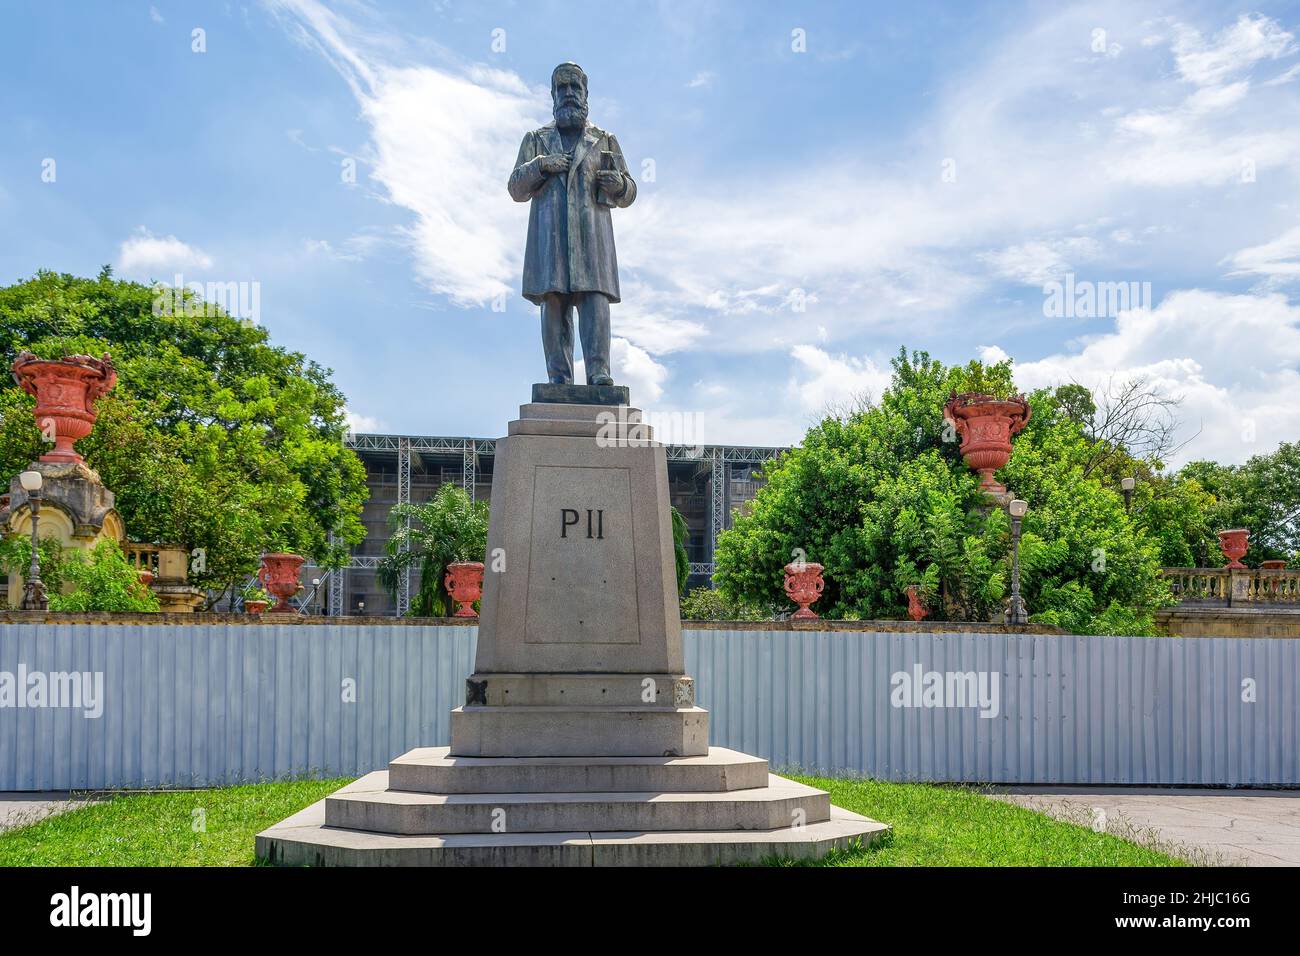 Skulptur oder Statue von Don Pedro II in Quinta da Boa Vista, einem öffentlichen Park von großer historischer Bedeutung, der sich im Viertel Sao Cristovao befindet Stockfoto